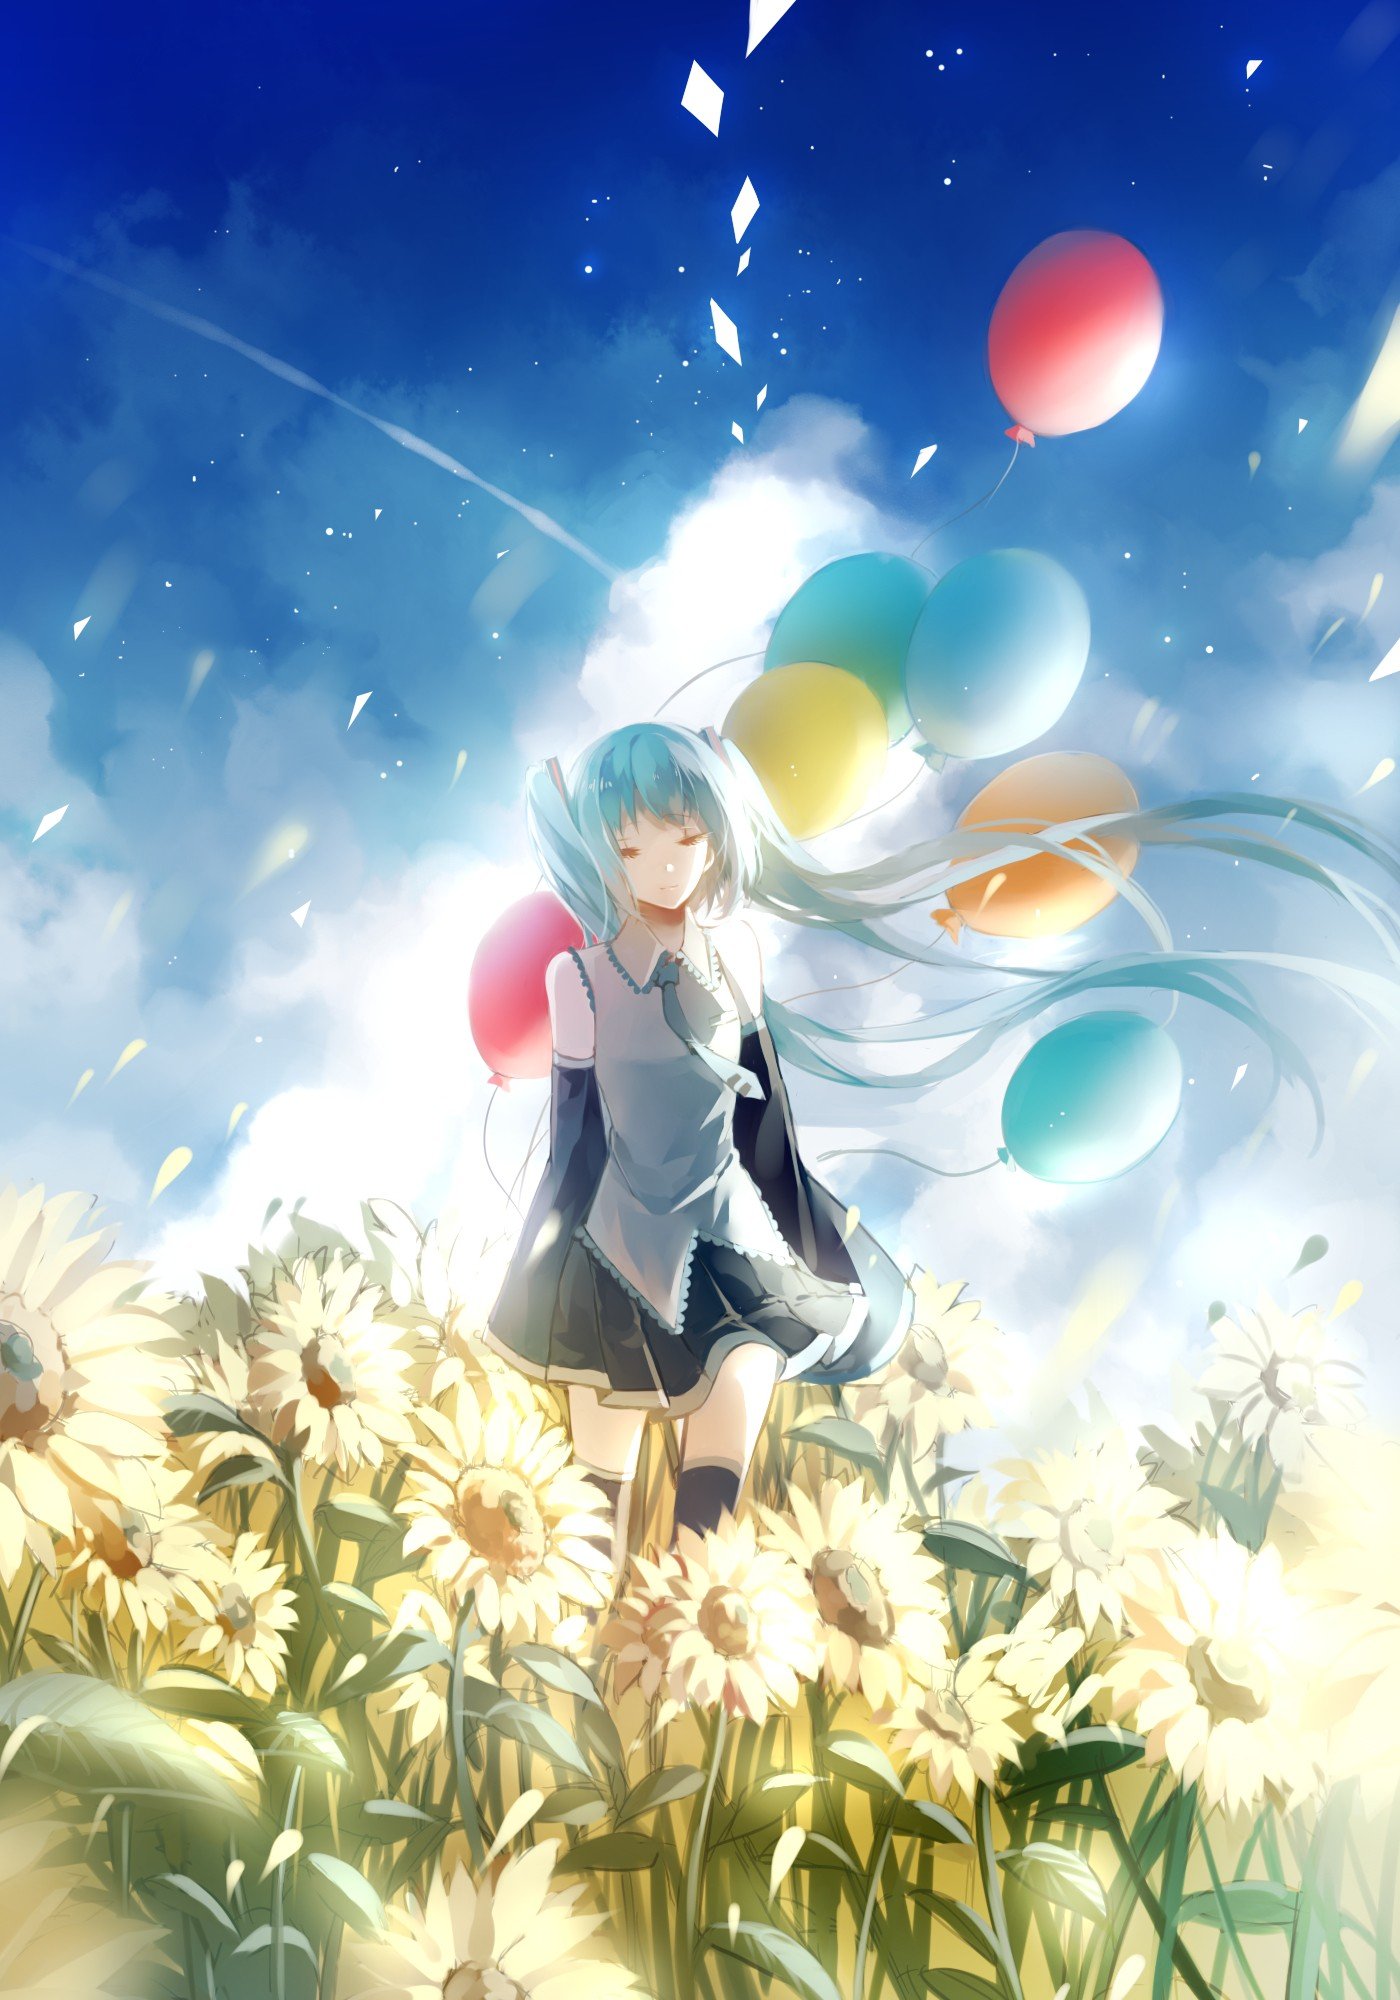 Vocaloid, Hatsune Miku, Long hair, Twintails, Balloons, Flowers, Thigh highs, Neckties, Skirt, Flower petals, Wind, Sky, Clouds, Anime girls, Anime Wallpaper